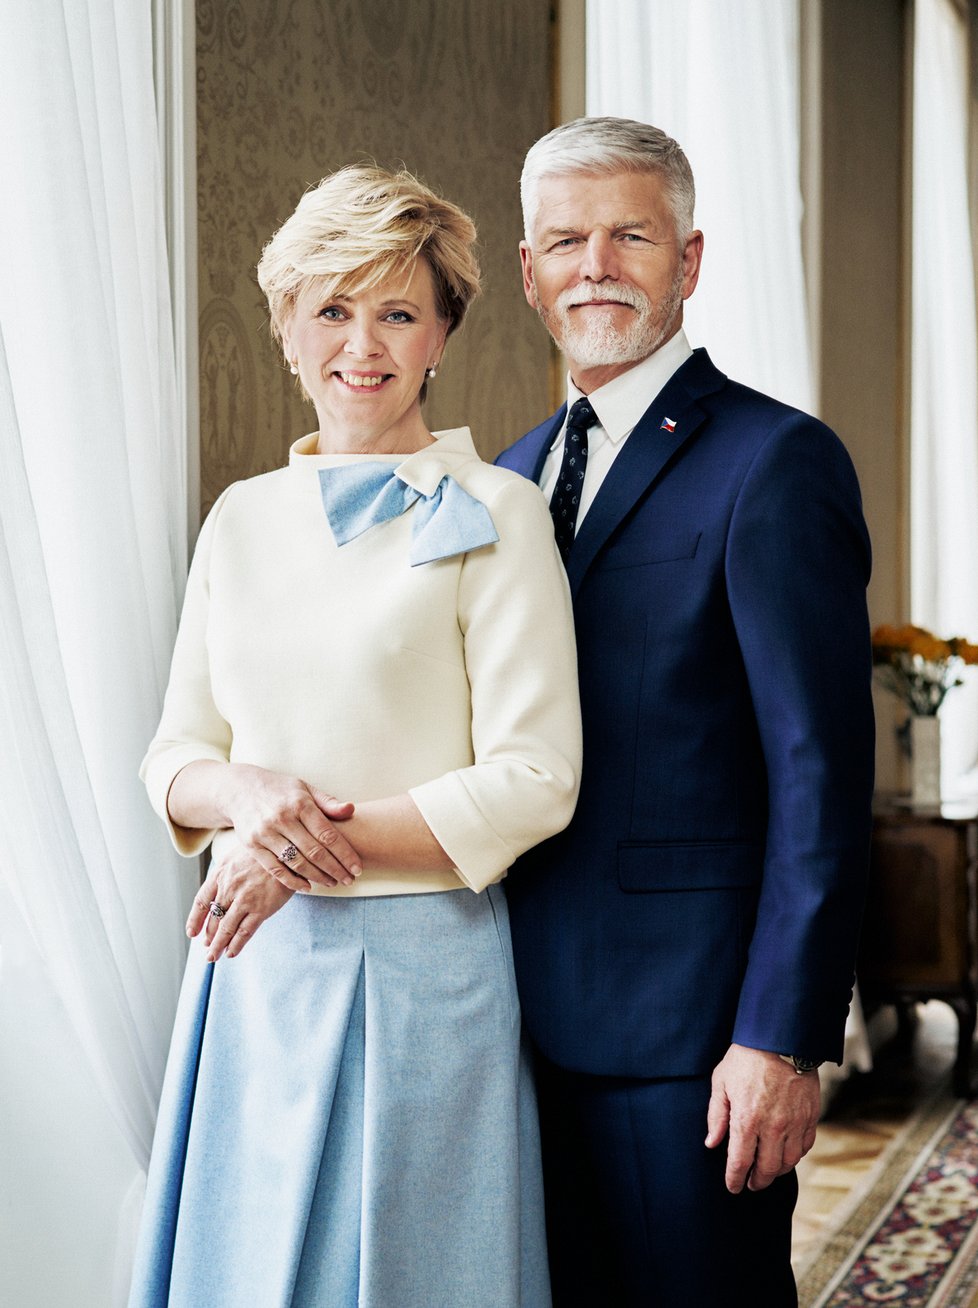 Oficiální portrét prezidenta Petra Pavla s manželkou Evou